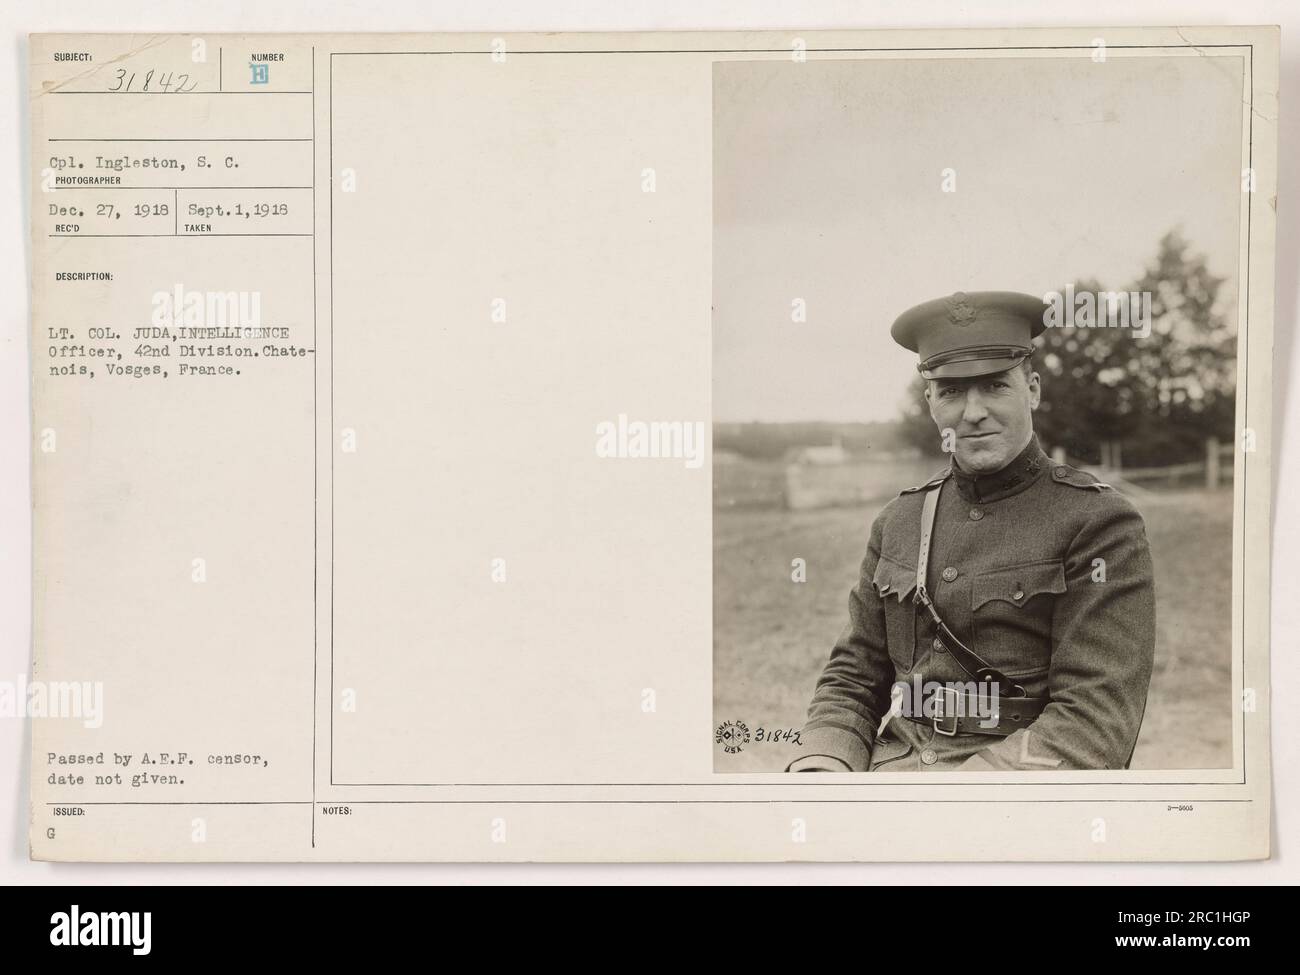 Una foto del tenente colonnello Juda, un ufficiale dei servizi segreti della 42a divisione, scattata a Chate-nois, Vosges, Francia. La fotografia è stata ricevuta il 1 settembre 1918, e il fotografo è identificato come caporale Ingleston, S. C. la fotografia è stata passata dalla A.E.F. censore. Foto Stock